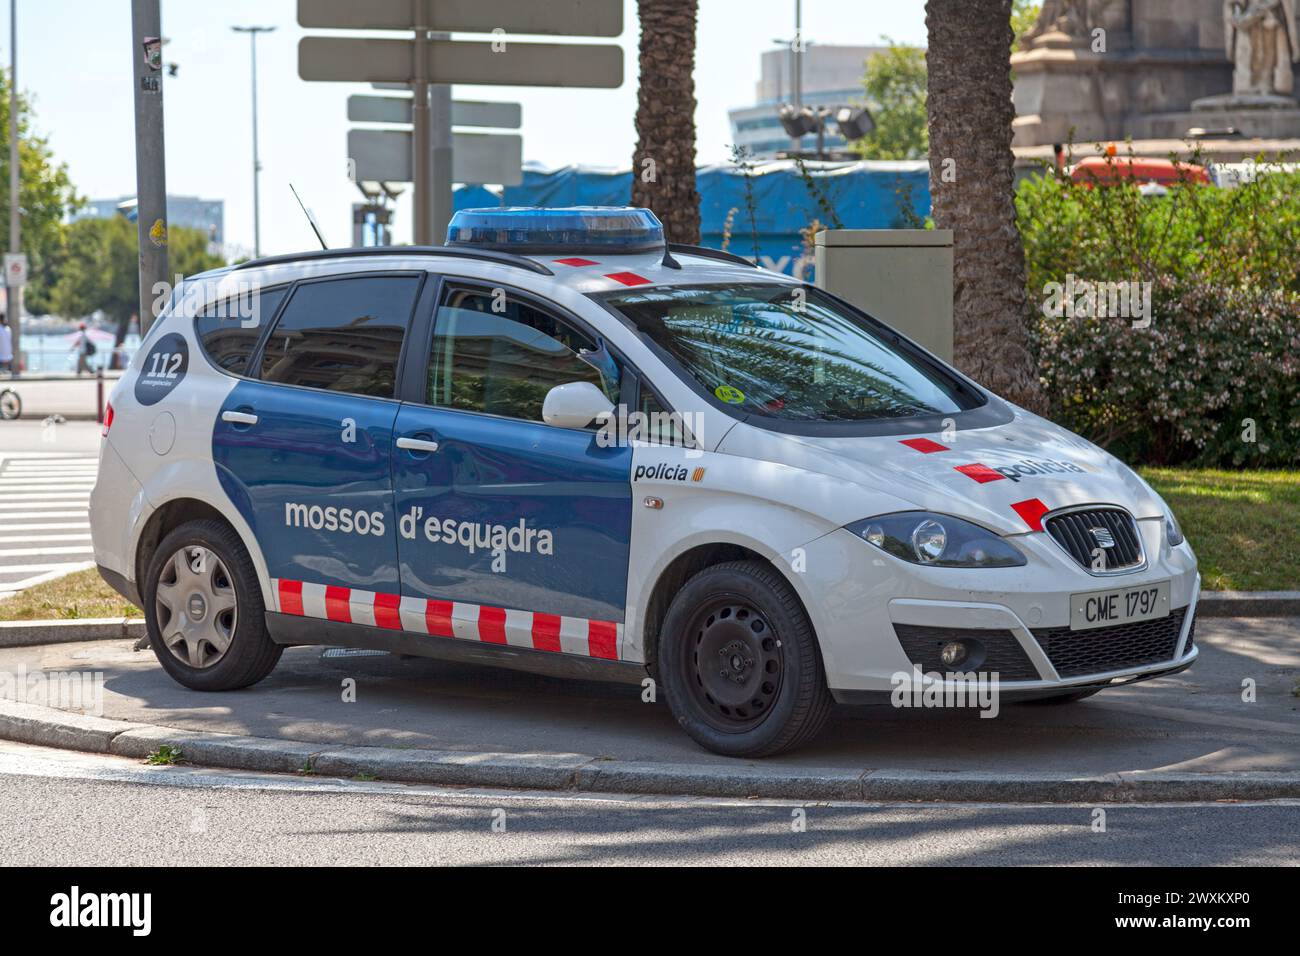 Barcellona, Spagna - 08 giugno 2018: Auto della polizia del Mossos d'esquadra parcheggiata in strada. Foto Stock